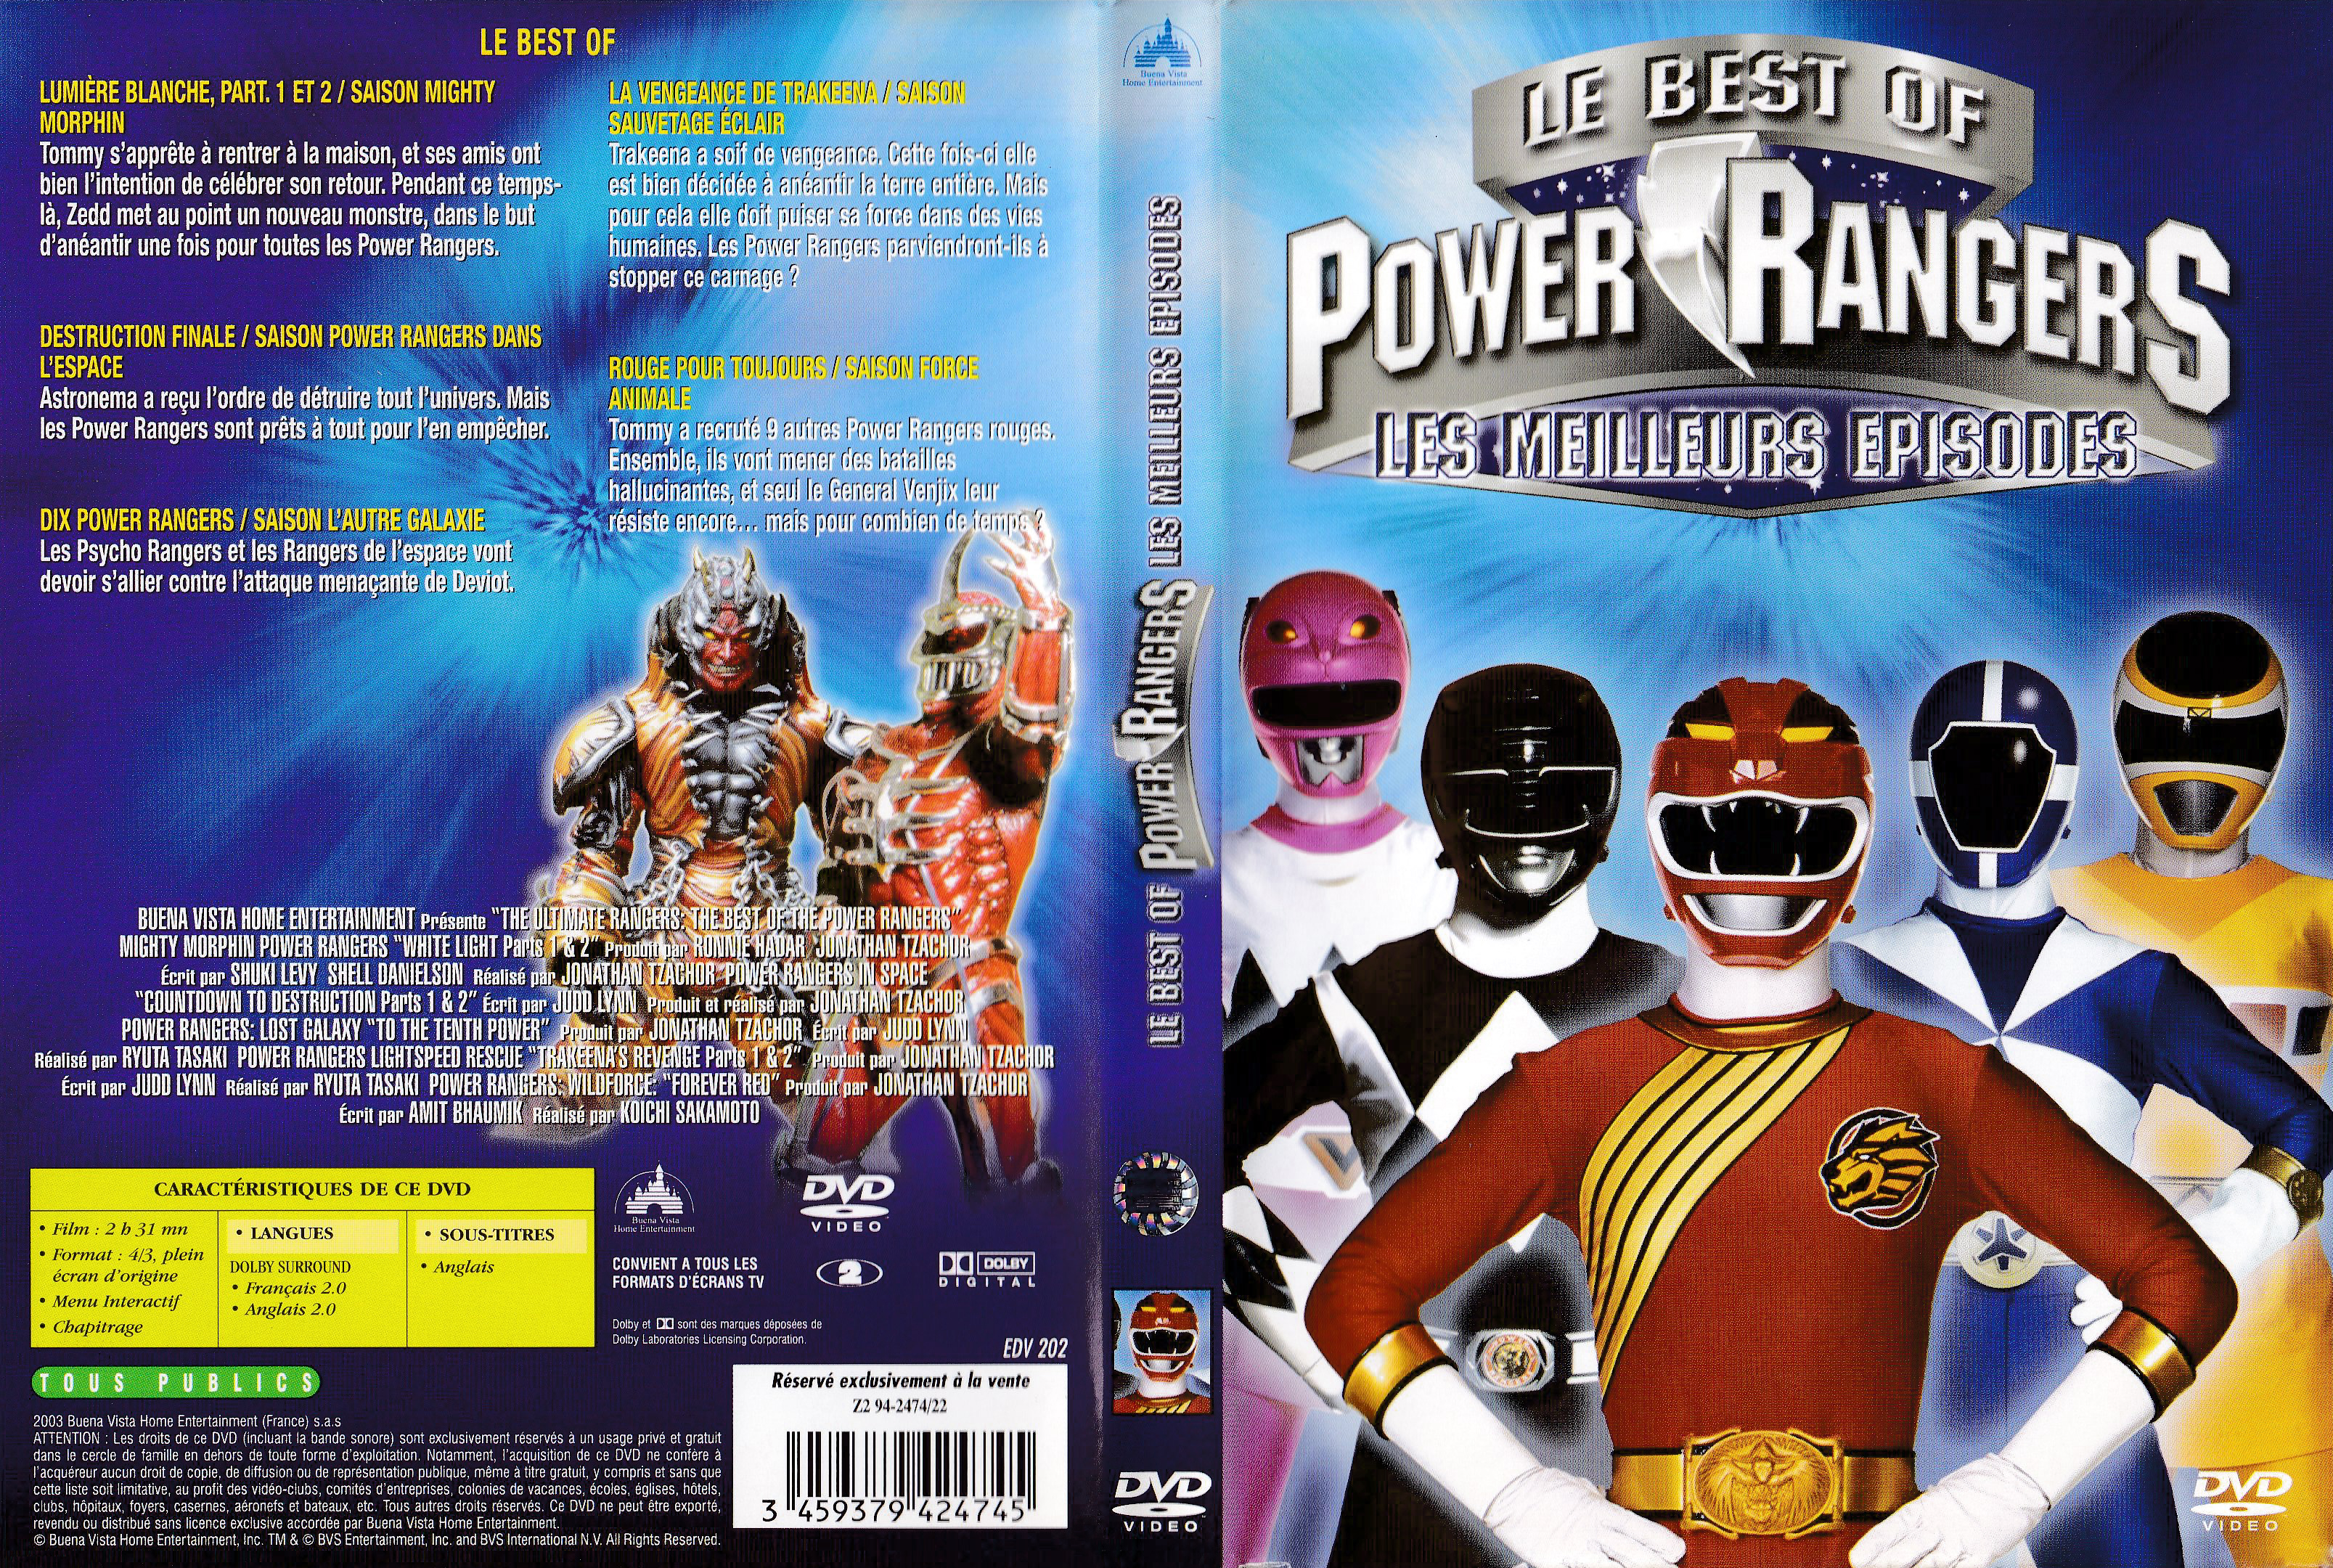 Le Best of Power Rangers - Les meilleurs épisodes